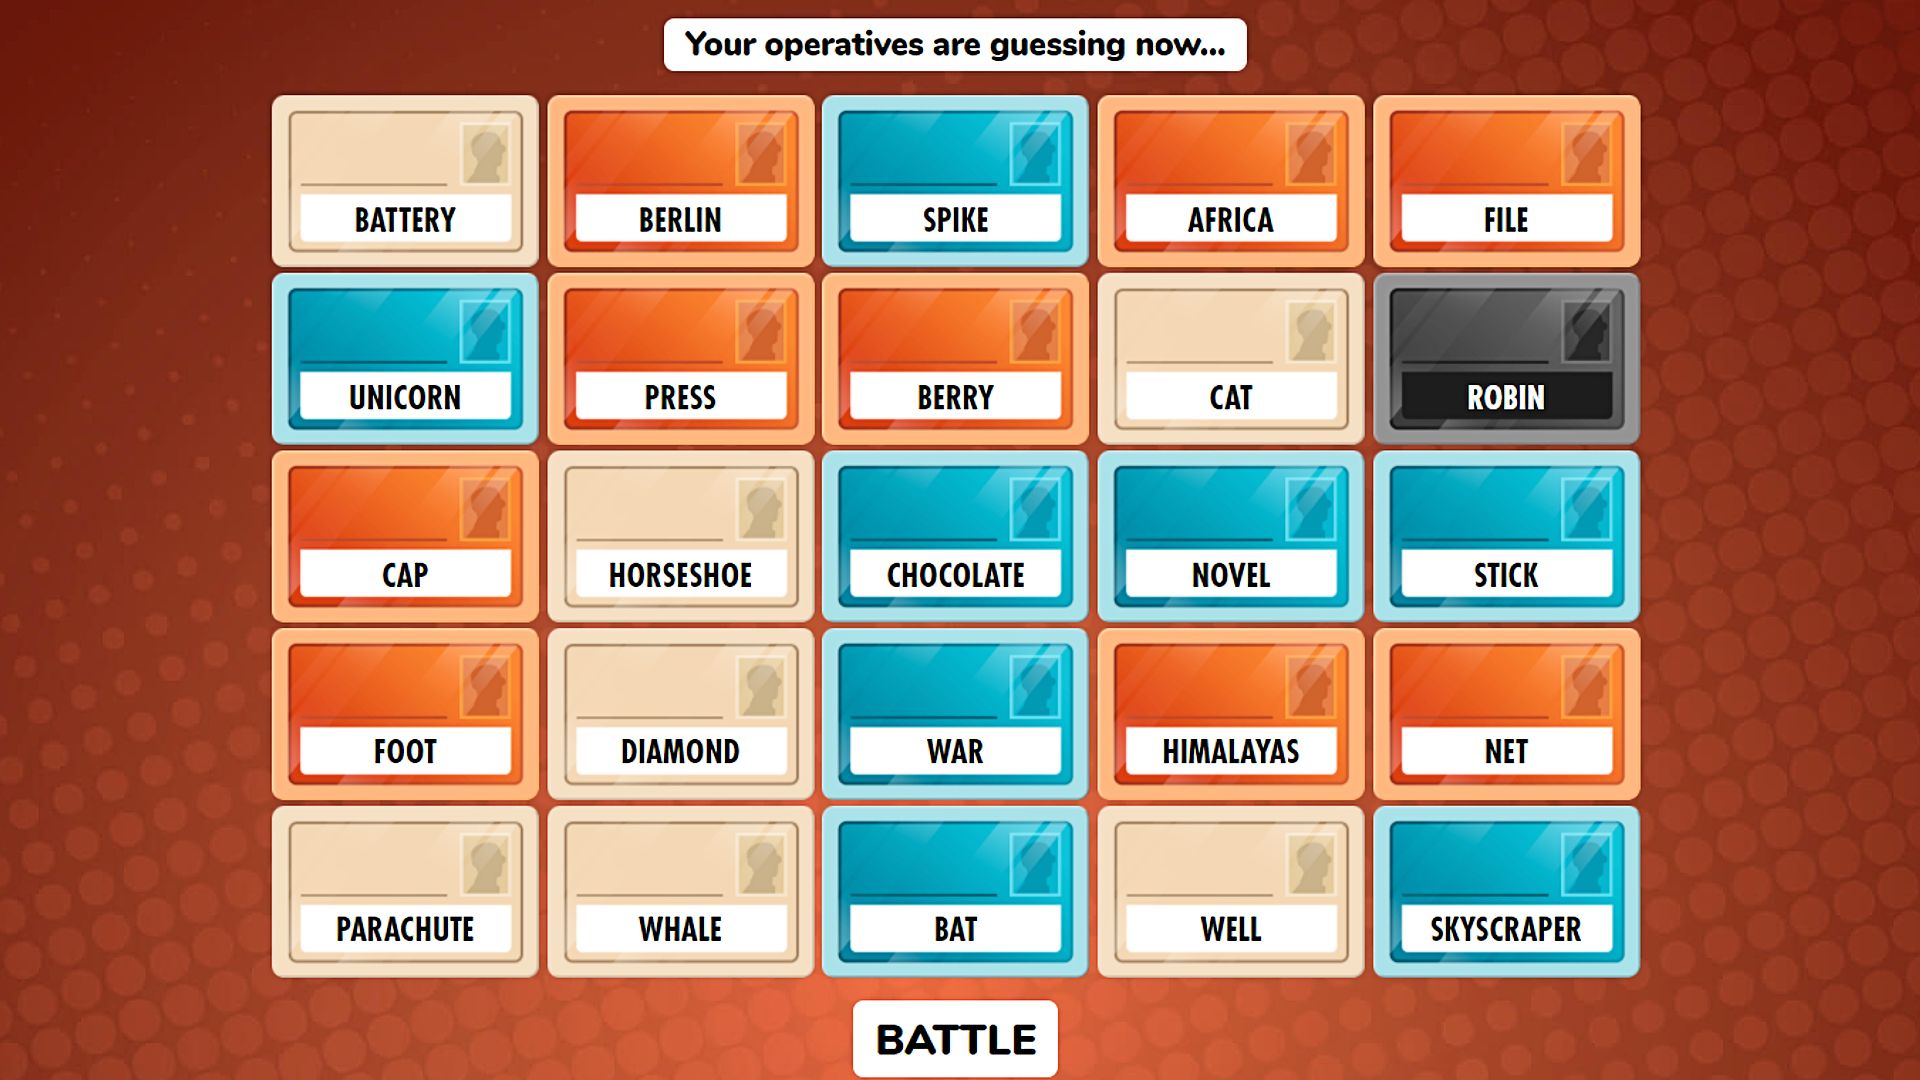 بازی های آنلاین: نام های رمزگذاری. تصویر مجموعه ای از کارت ها را با کلمات مختلف روی آنها نشان می دهد